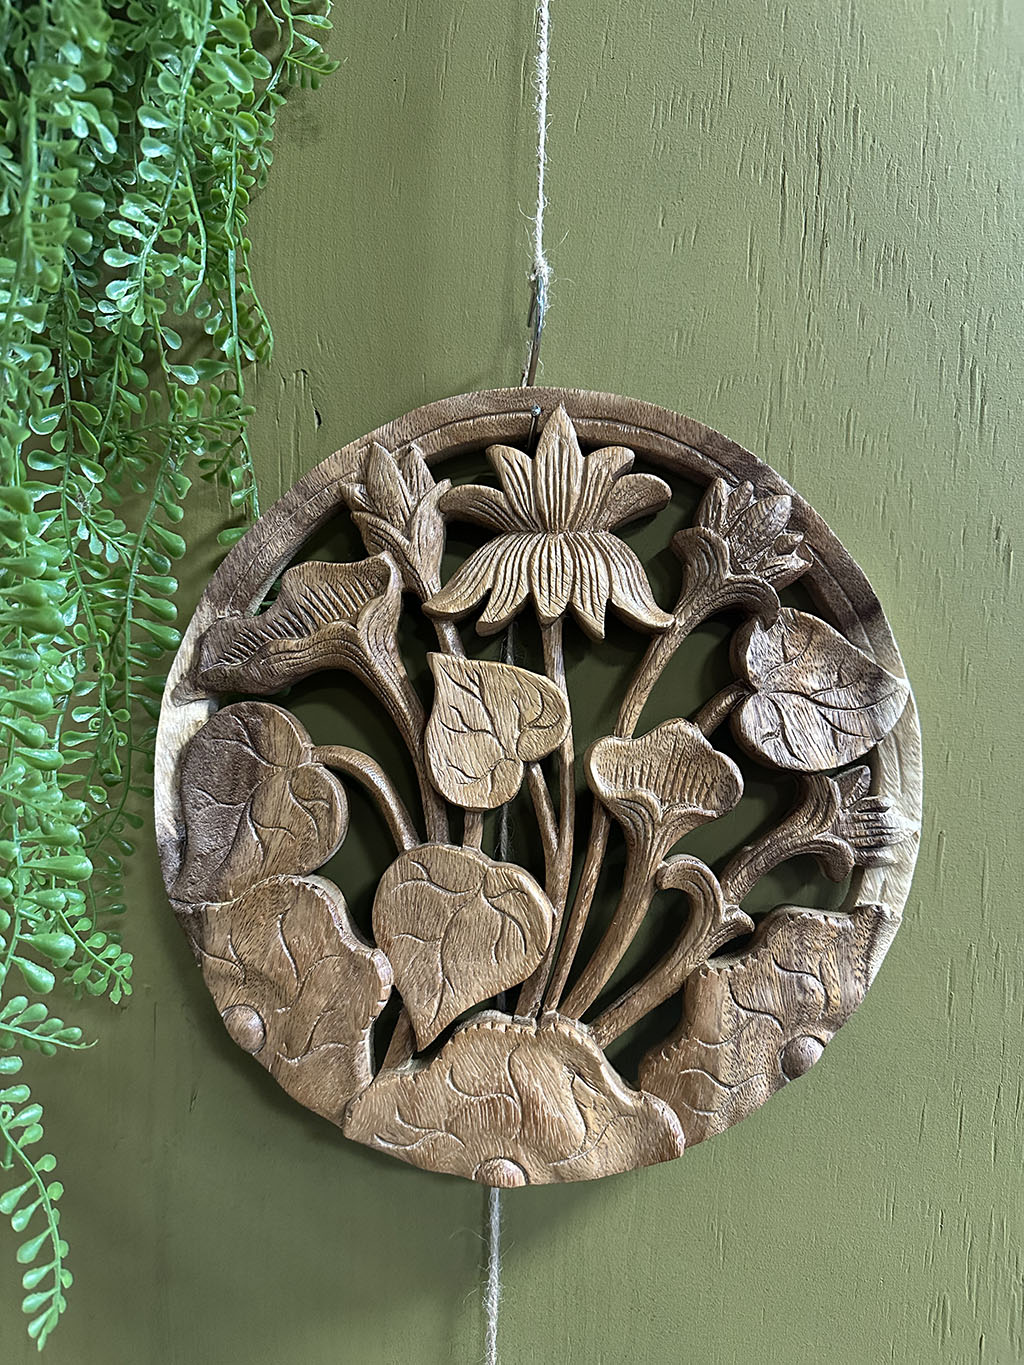 Deze tot in detail uitgesneden ronde houten wandecoratie met bloemen is een pronkstuk aan uw muur. Prachtig uit één stuk hout gesneden!